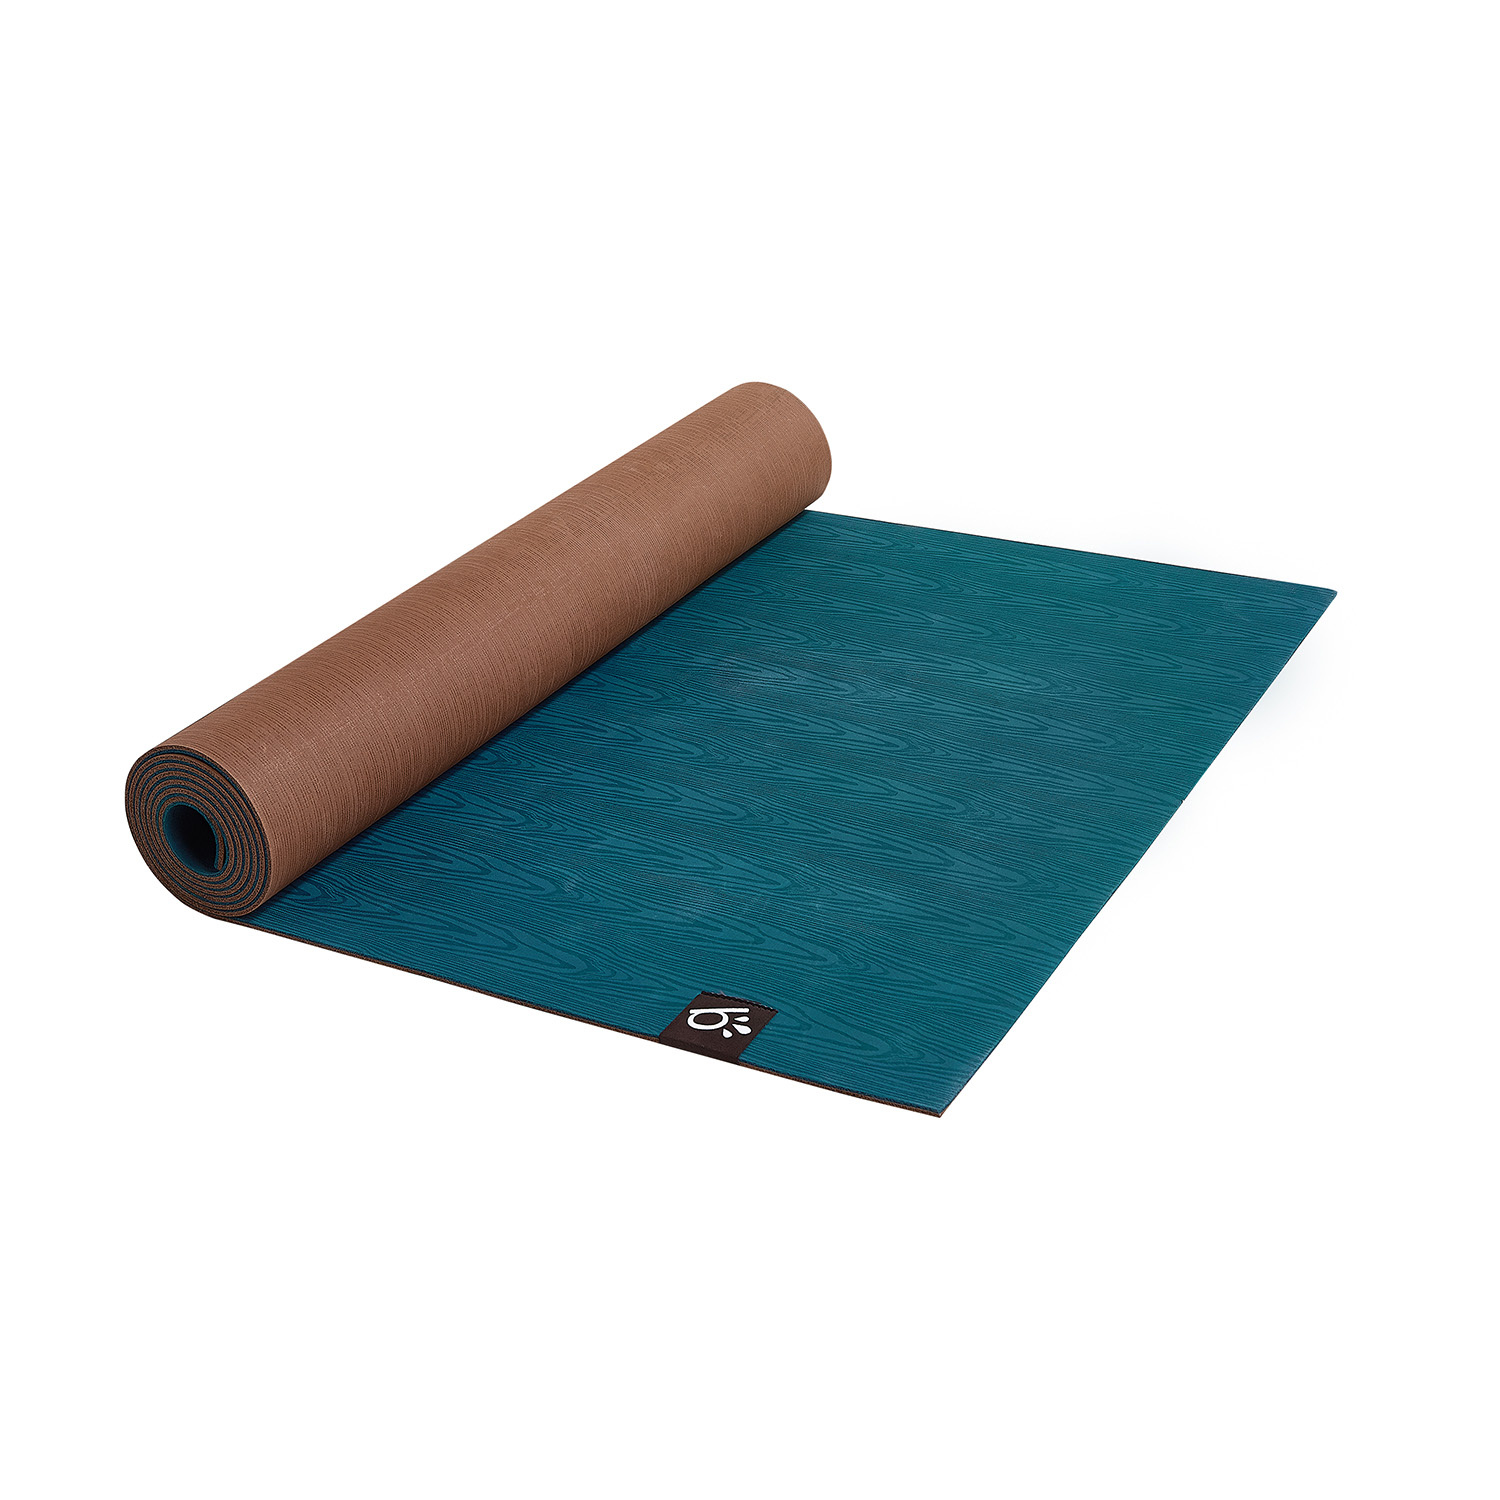 Yoga mat b mat strong - Deep Blue, B MAT Strong, B Yoga Mats, YOGA MATS